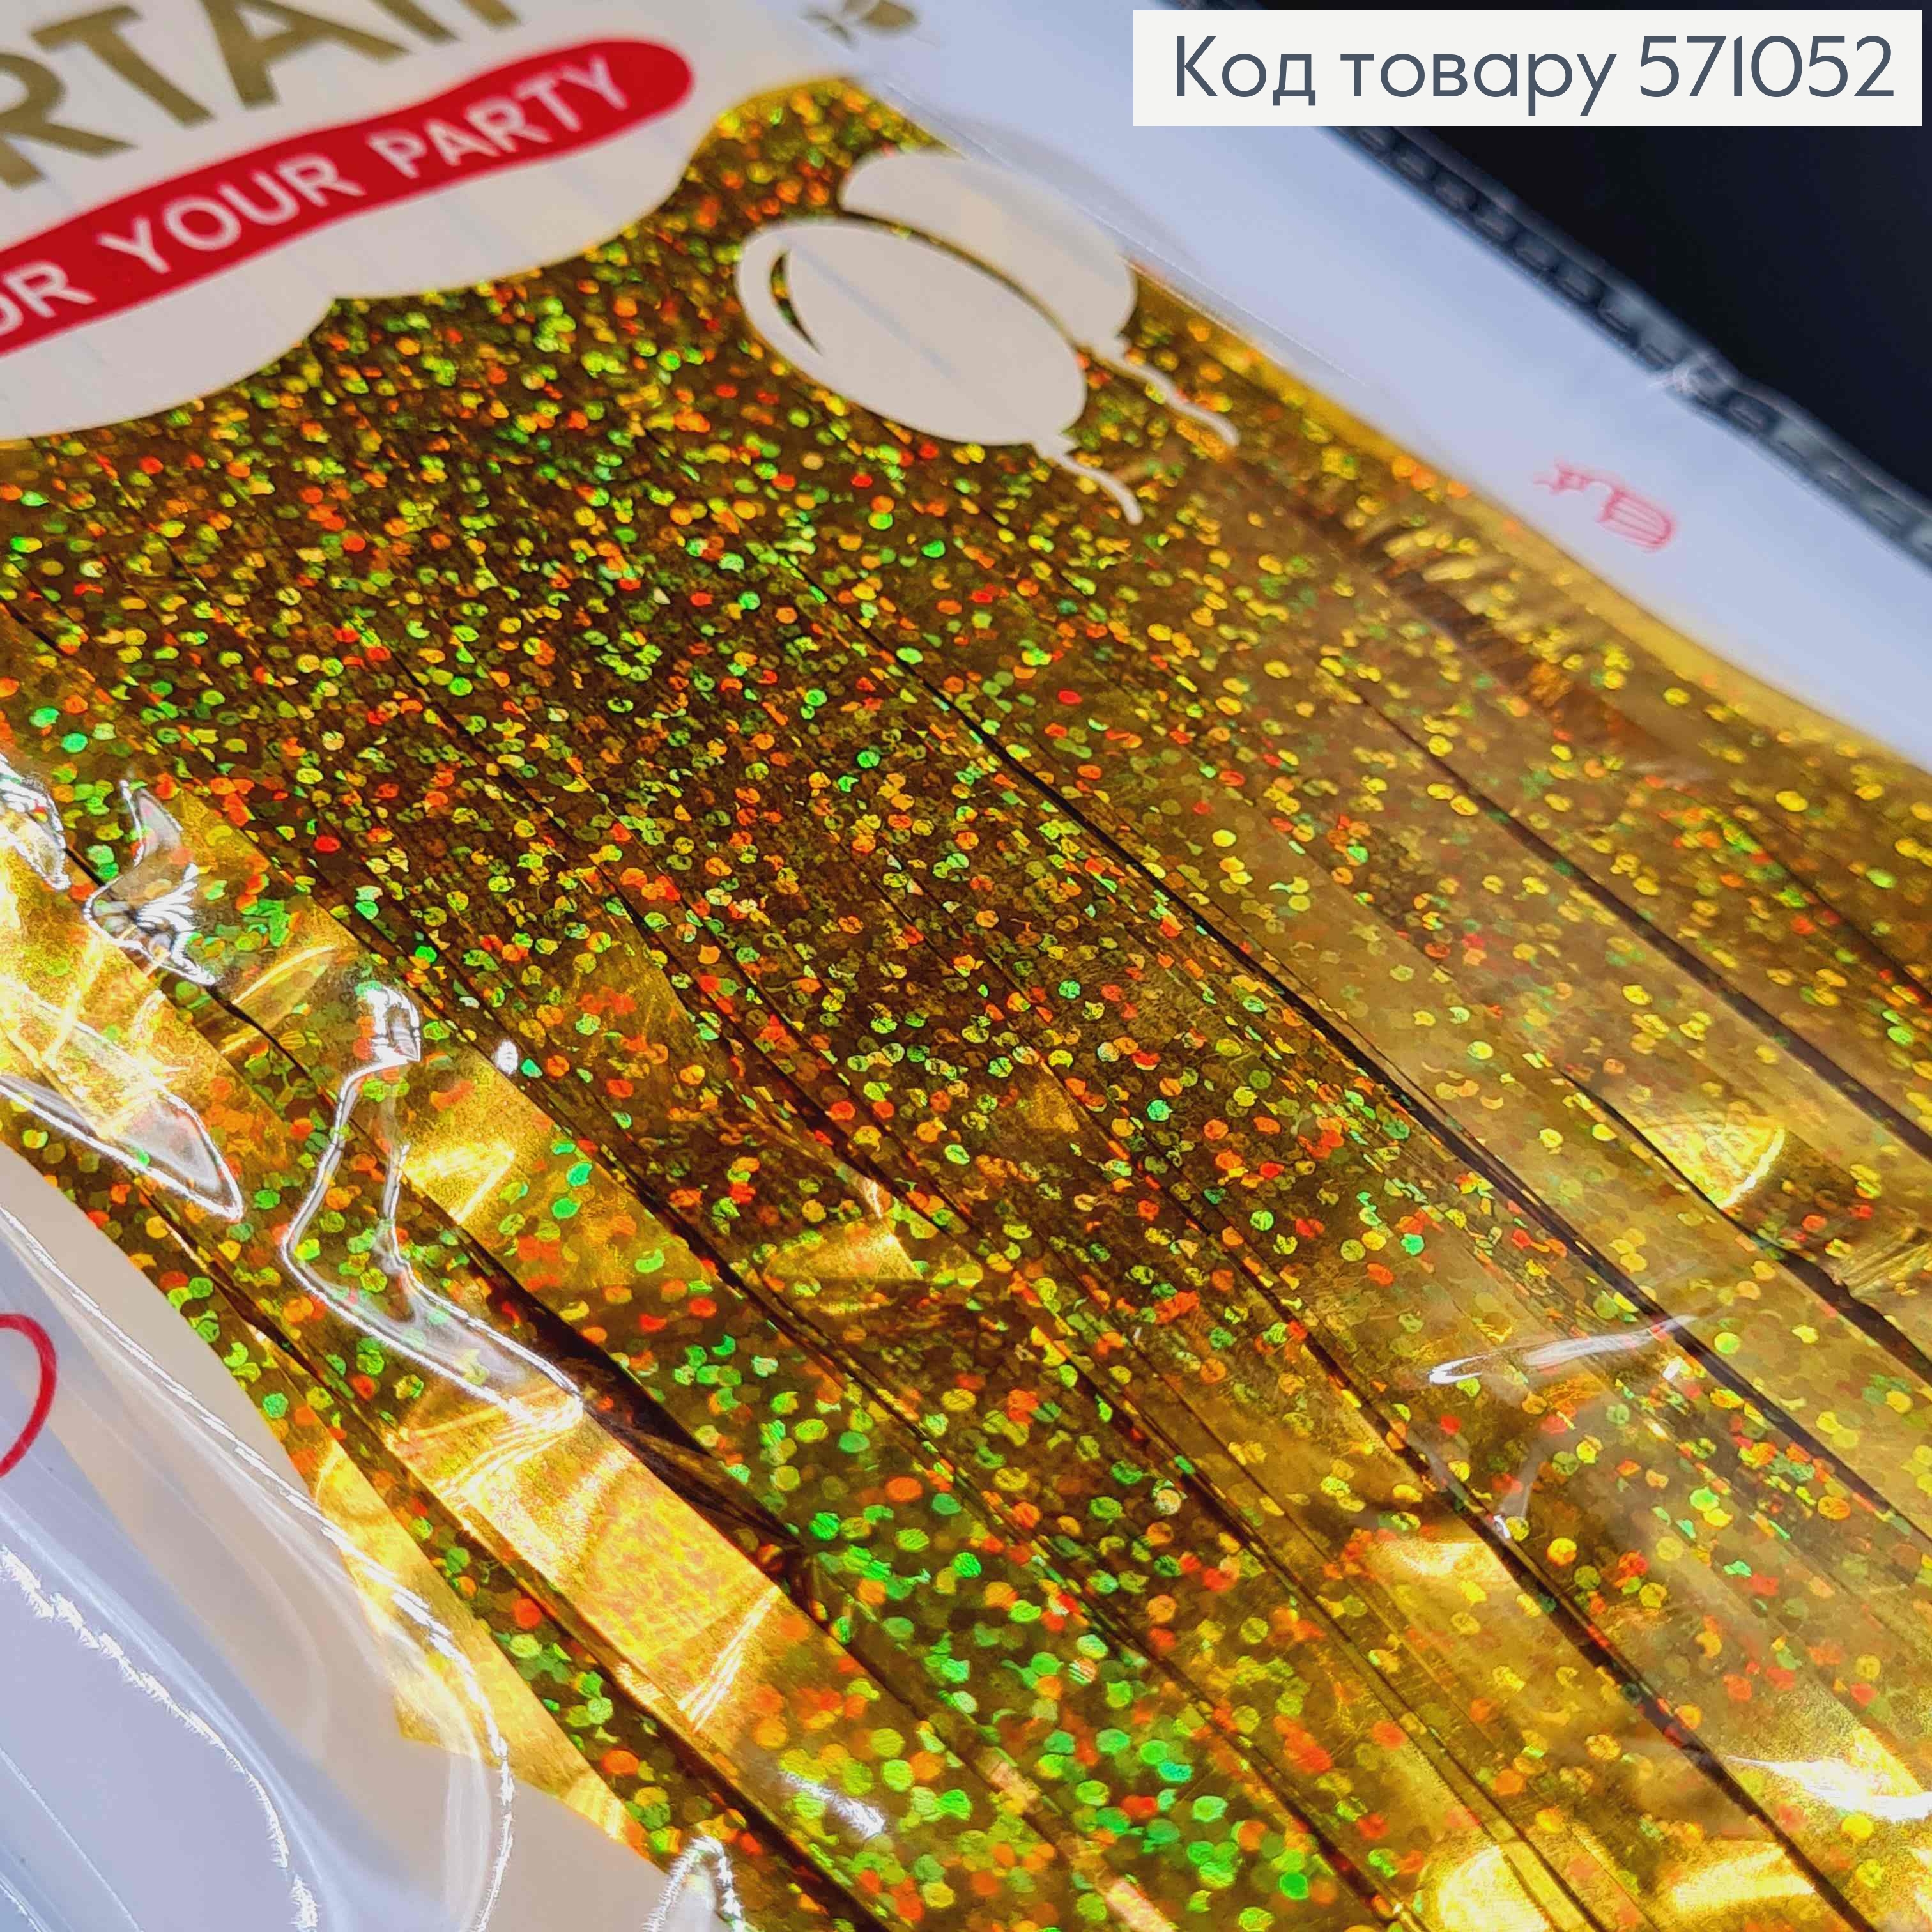 Фольгированная шторка для фотозоны, Золотого цвета с голограммой, 100*200 см. 571052 фото 2